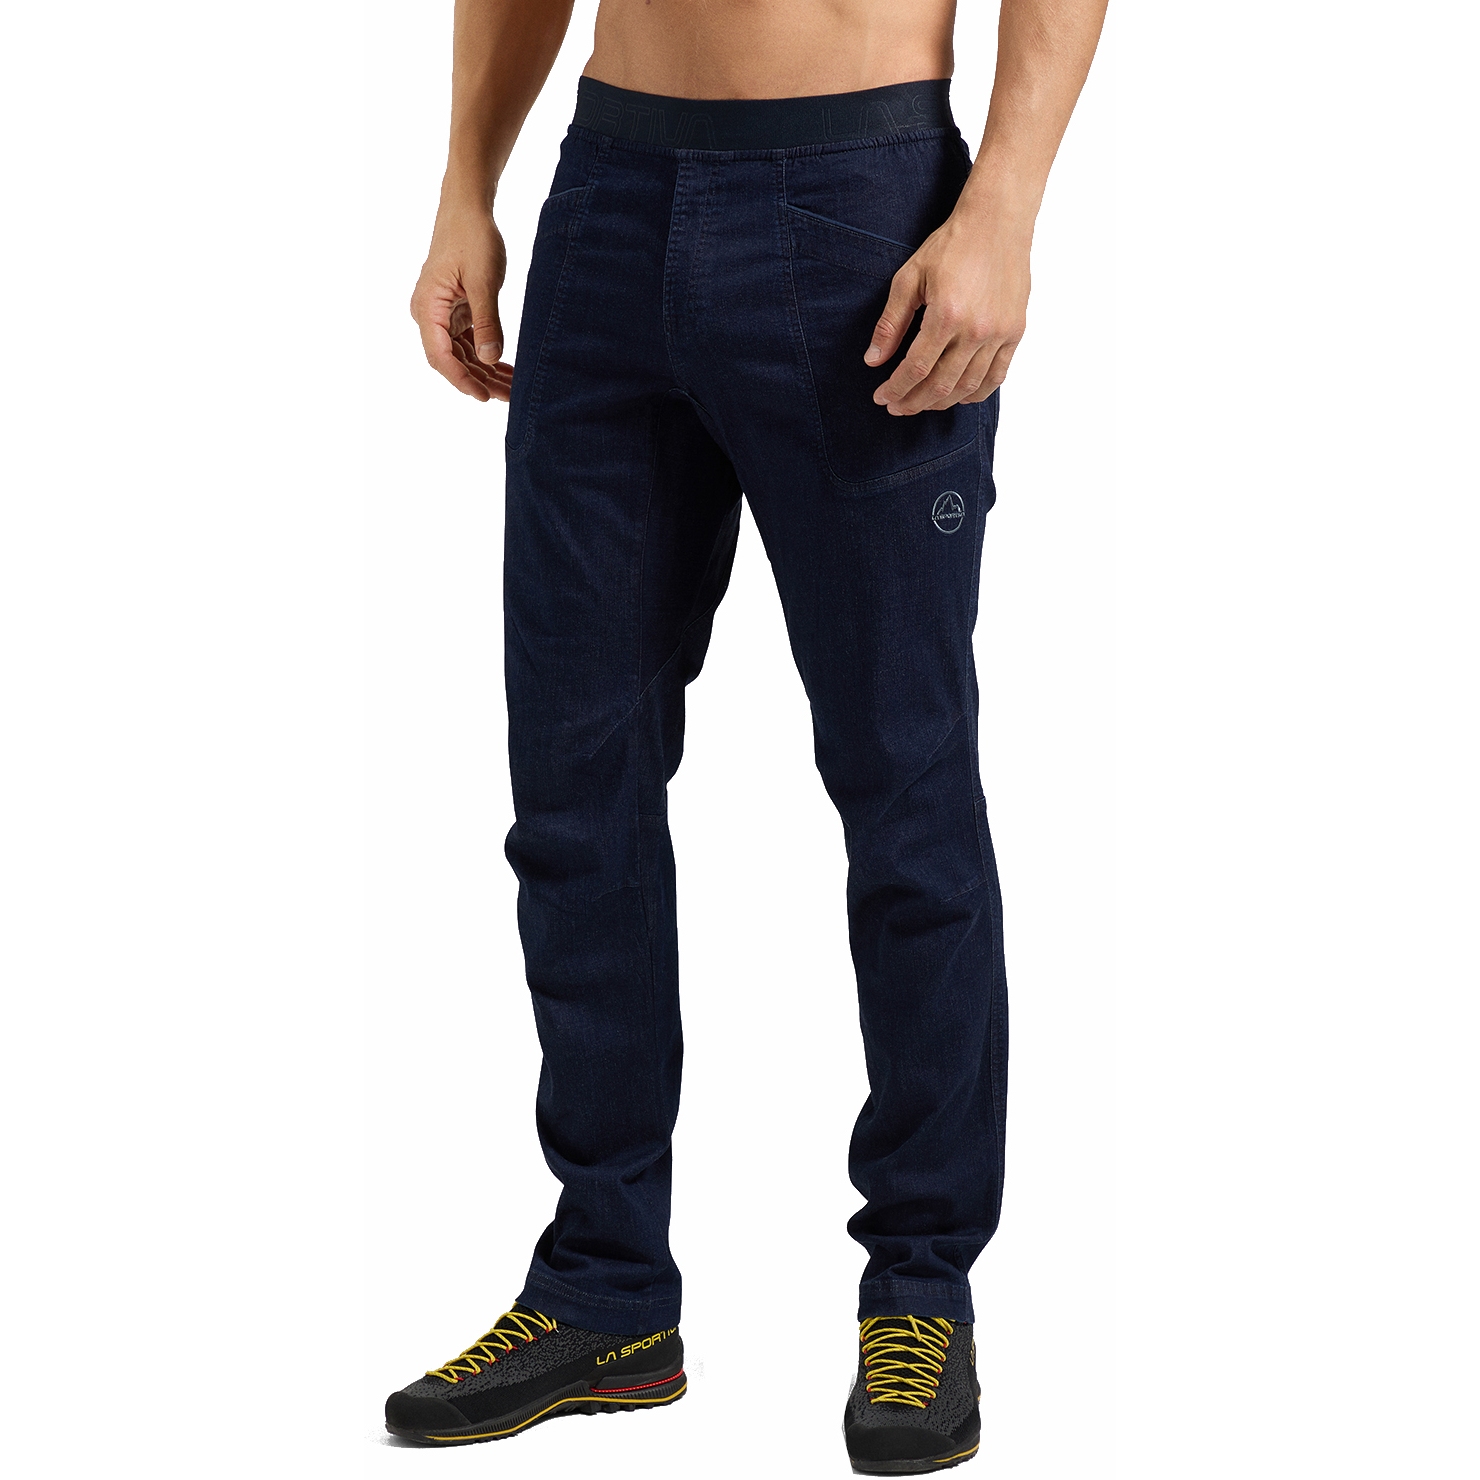 Picture of La Sportiva Cave Jeans Pants Men - Jeans/Deep Sea